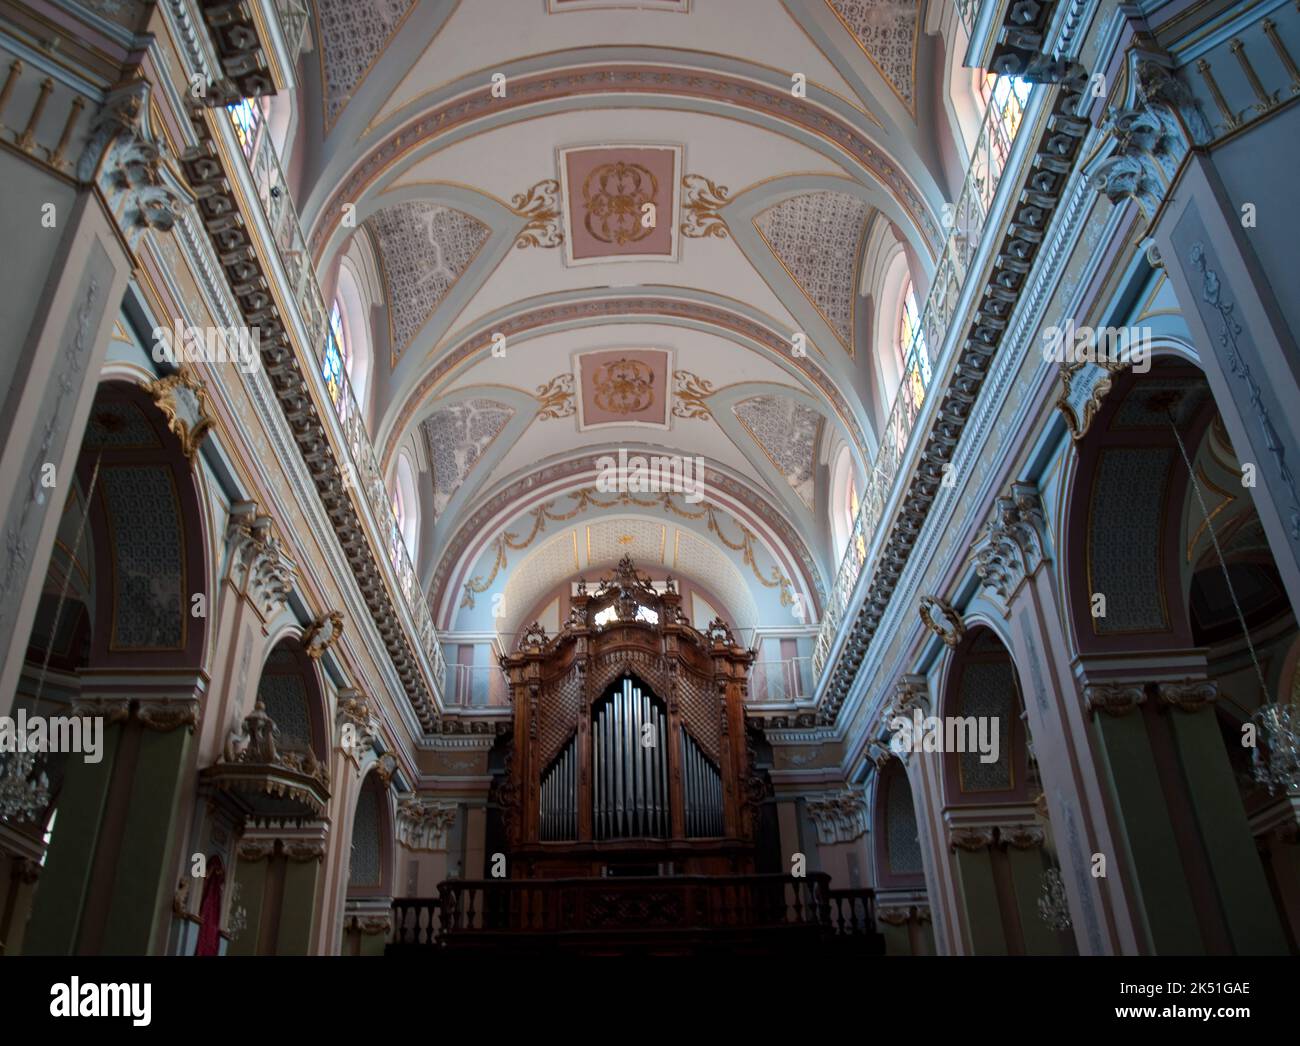 Nef et orgue, Eglise mère, Rosolini, province de Syracuse (Syracuse), Sicile, Italie. Capitales Corinthiennes décorant l'église la plus importante je Banque D'Images